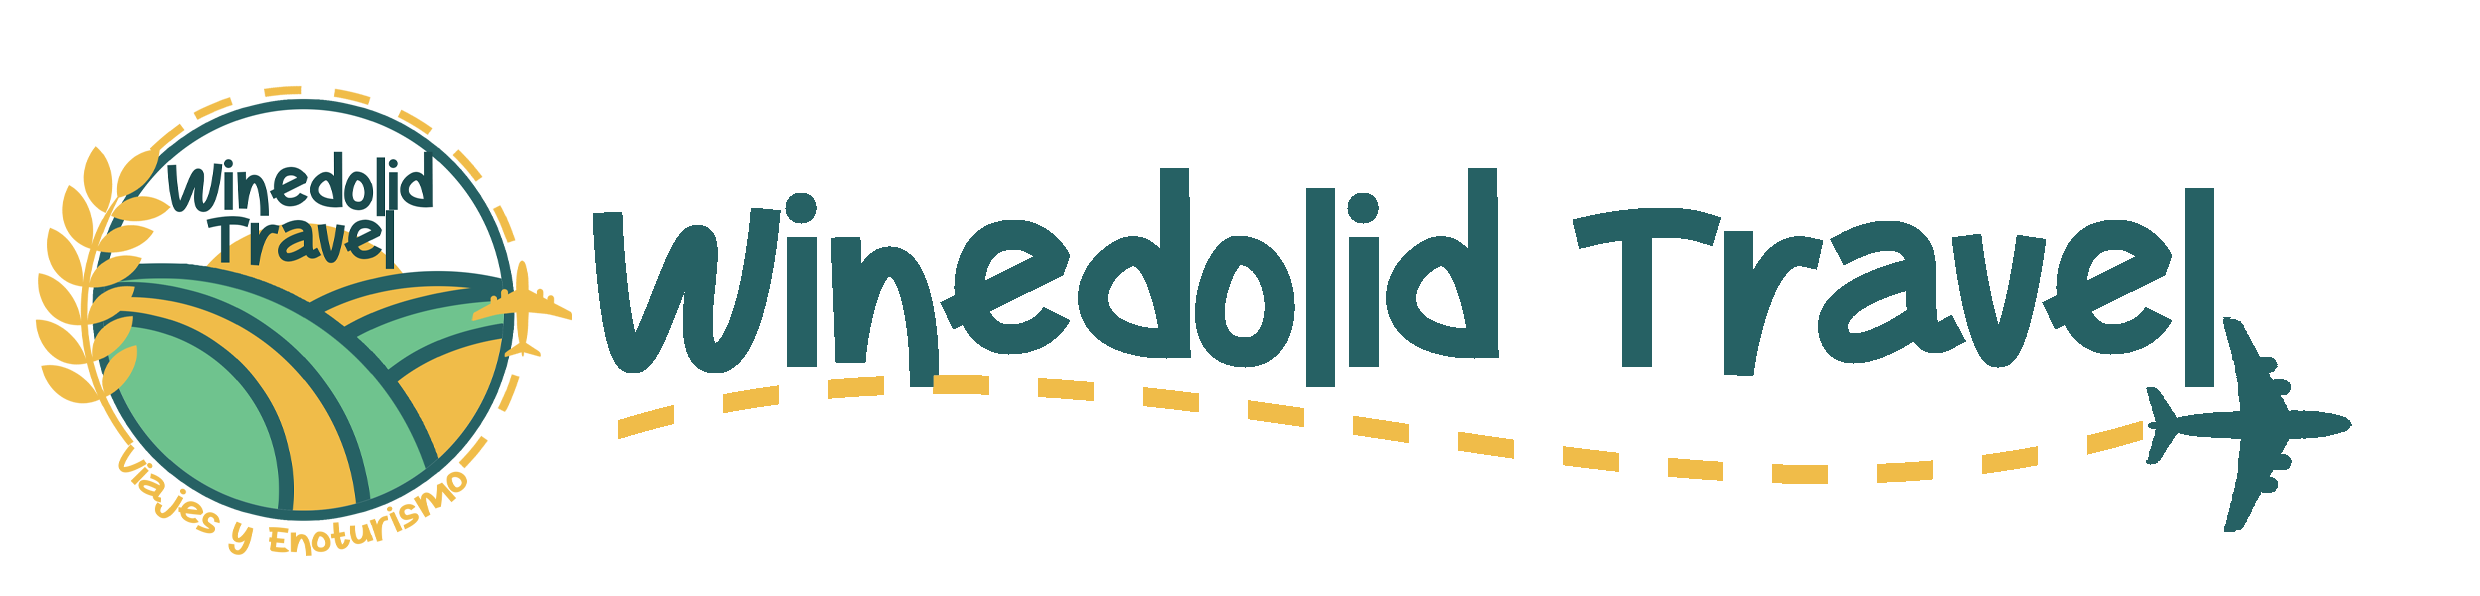 Logo winedolid travel